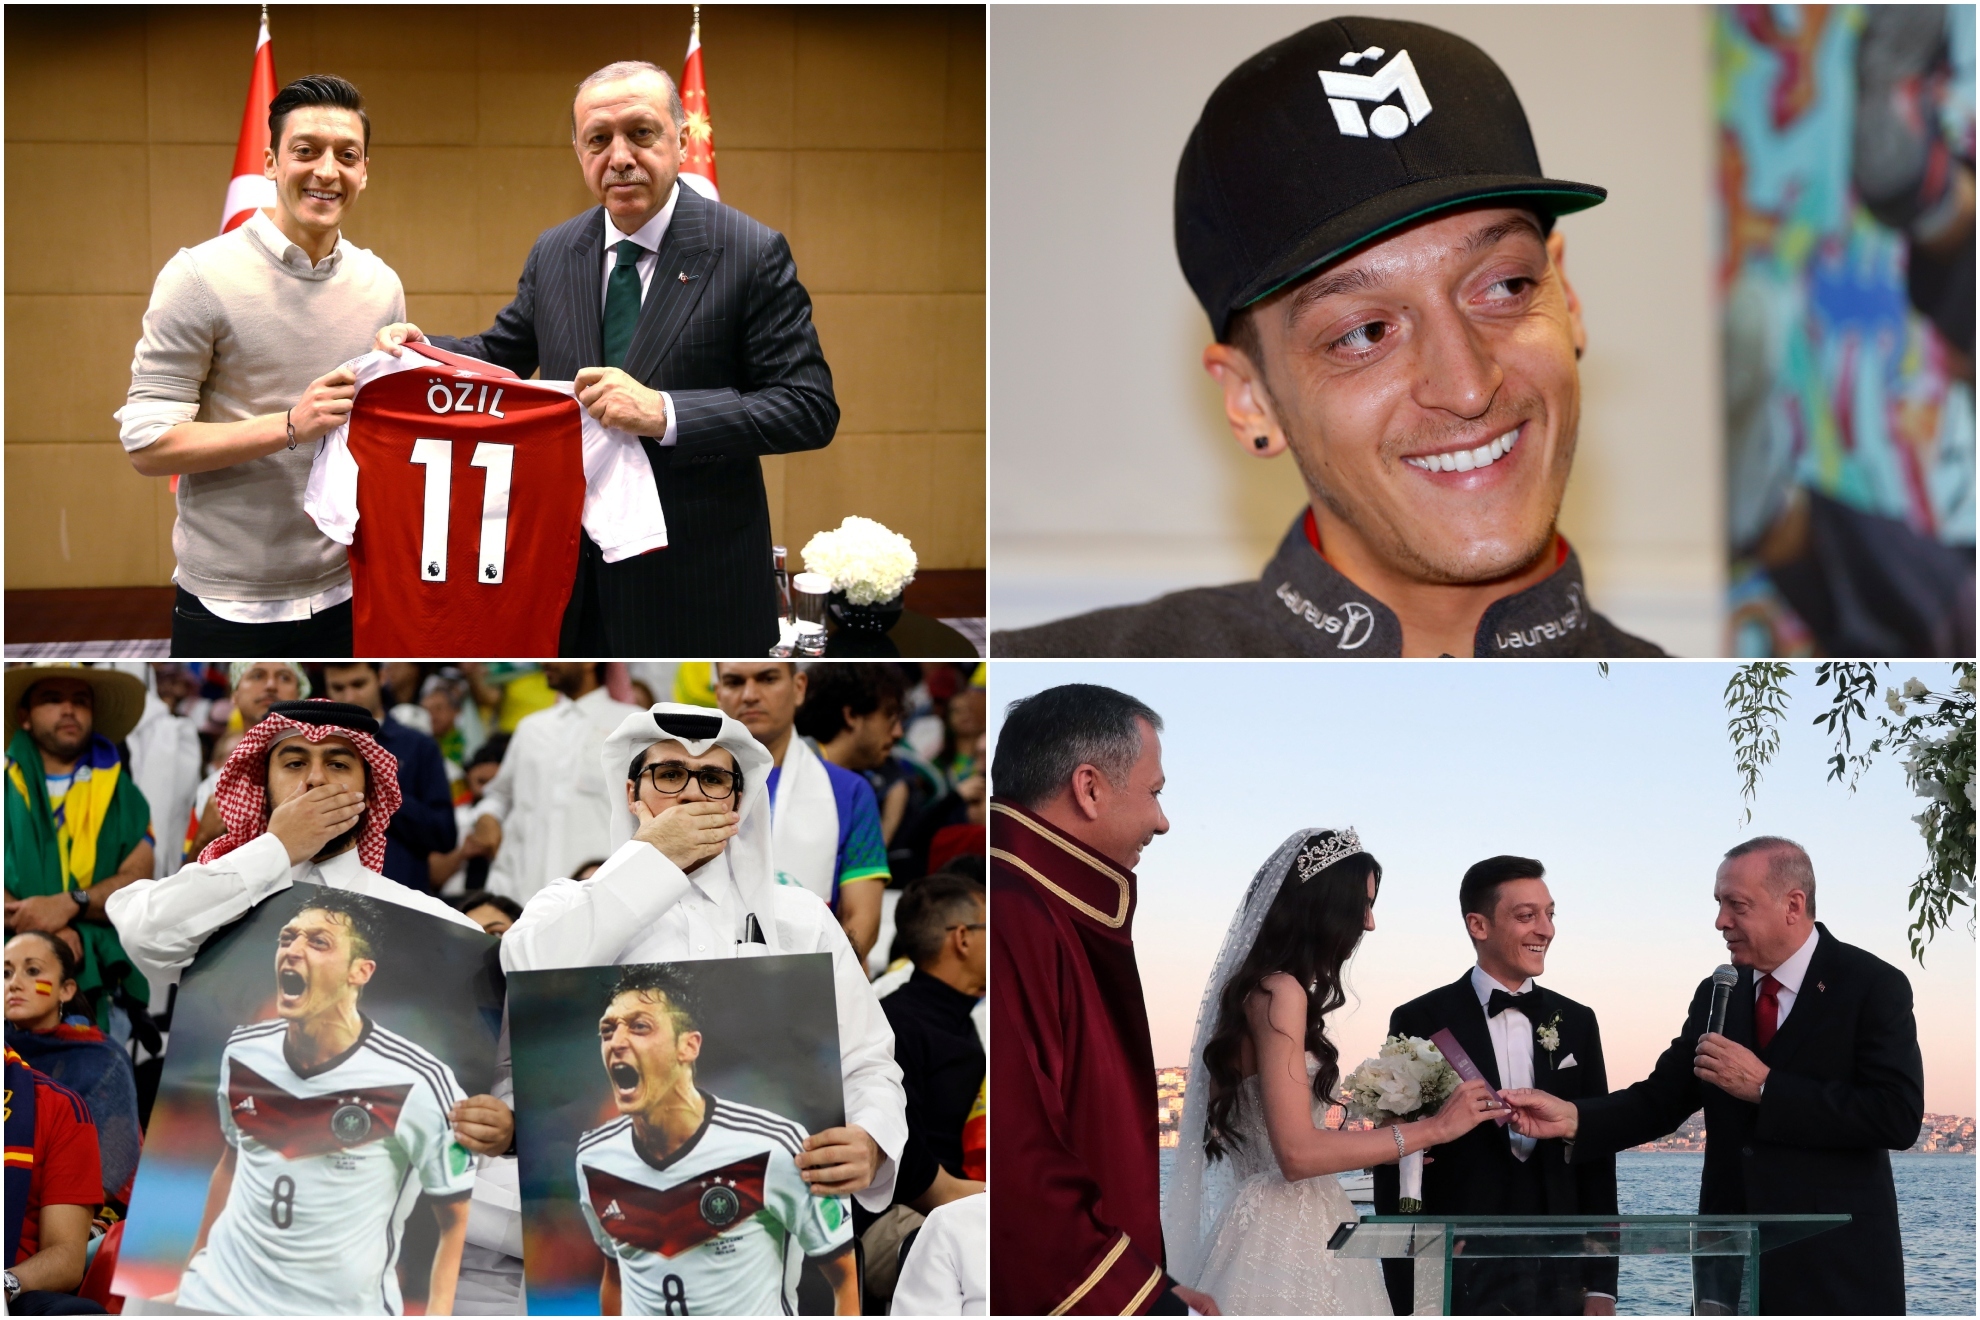 La otra vida de Özil: multimillonario más allá del fútbol